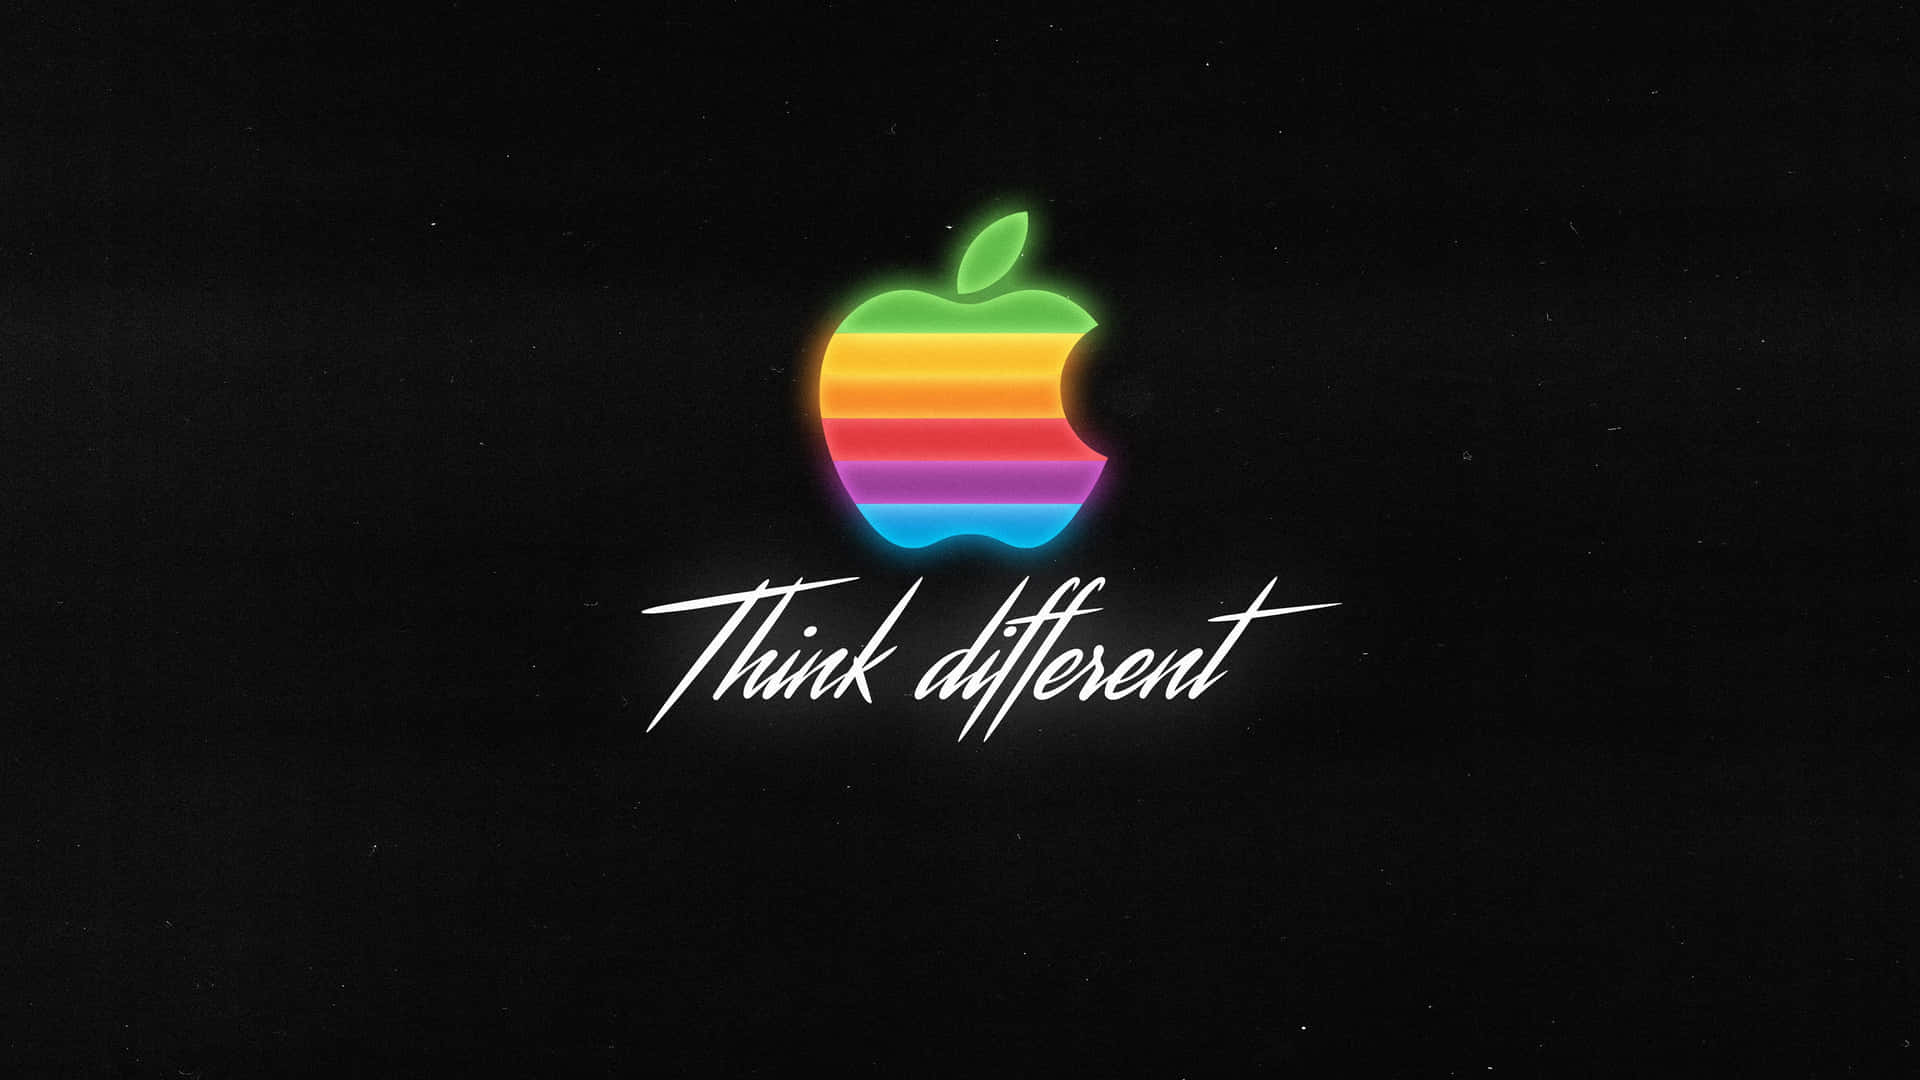 Sfondocon Logo Apple Elegante E Sofisticato.